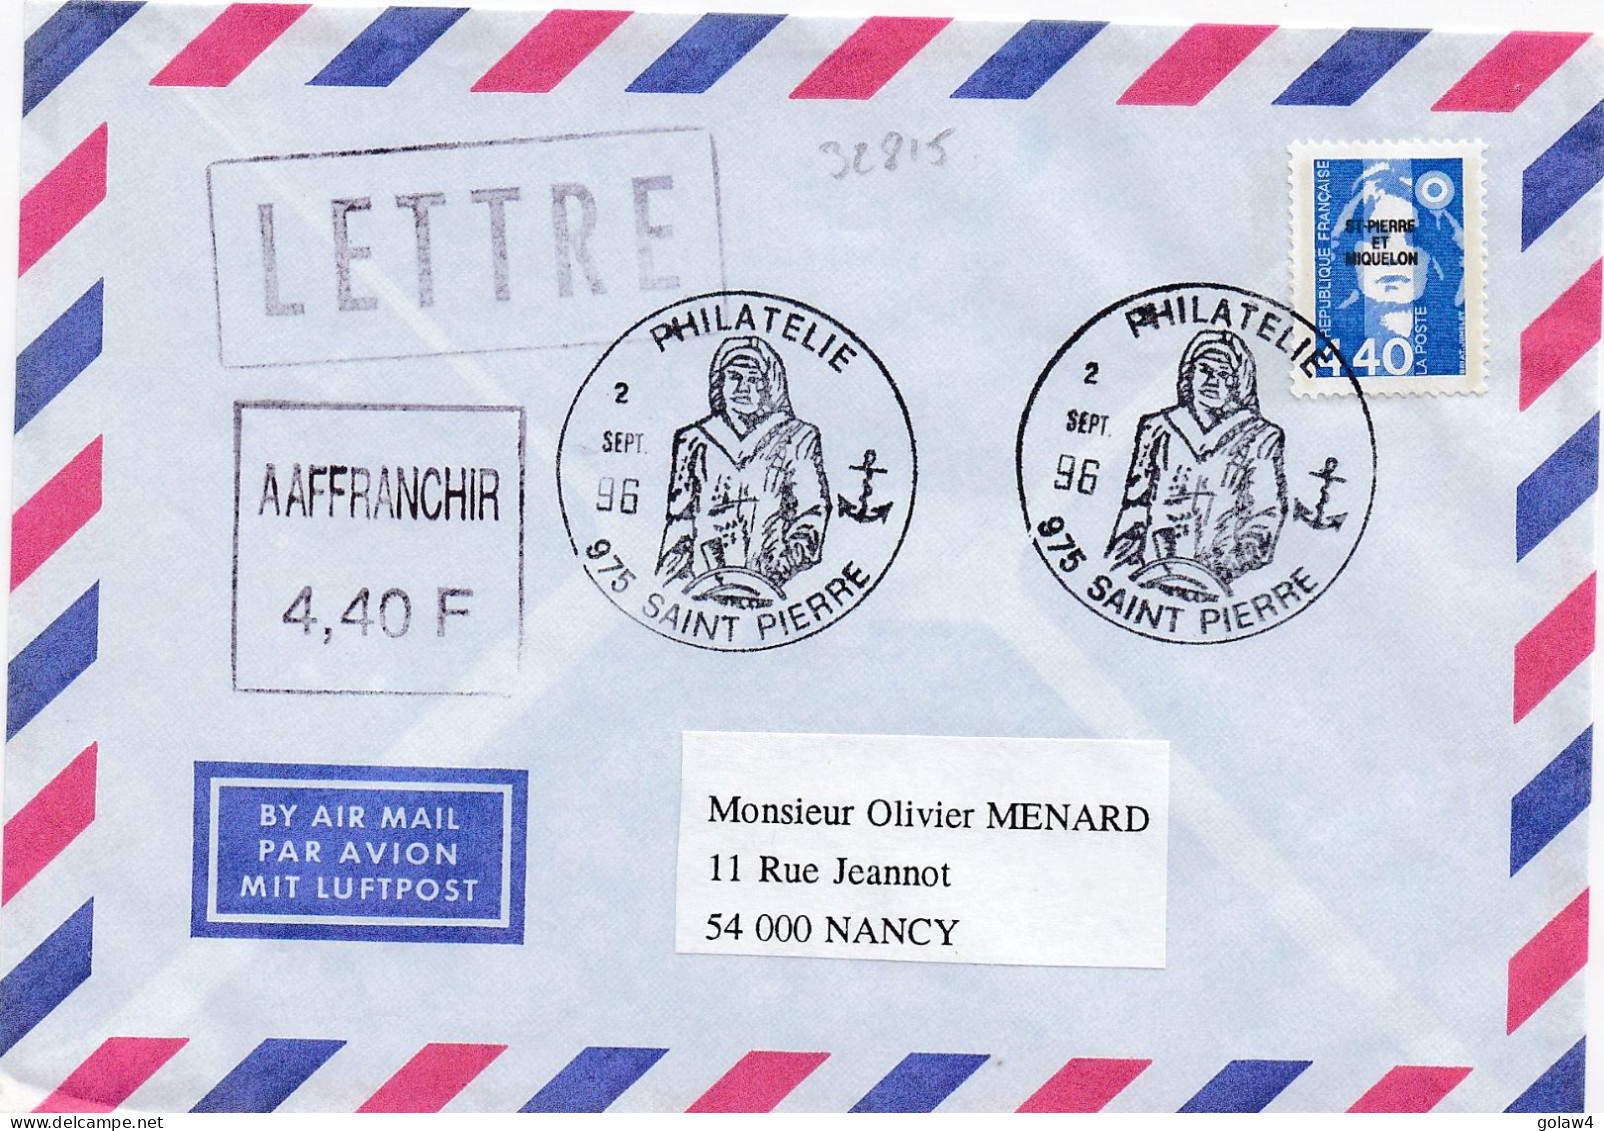 32815# MARIANNE BRIAT 4,40 Francs LETTRE Obl 975 ST PIERRE ET MIQUELON 1996 PHILATELIE NANCY MEURTHE MOSELLE - Covers & Documents